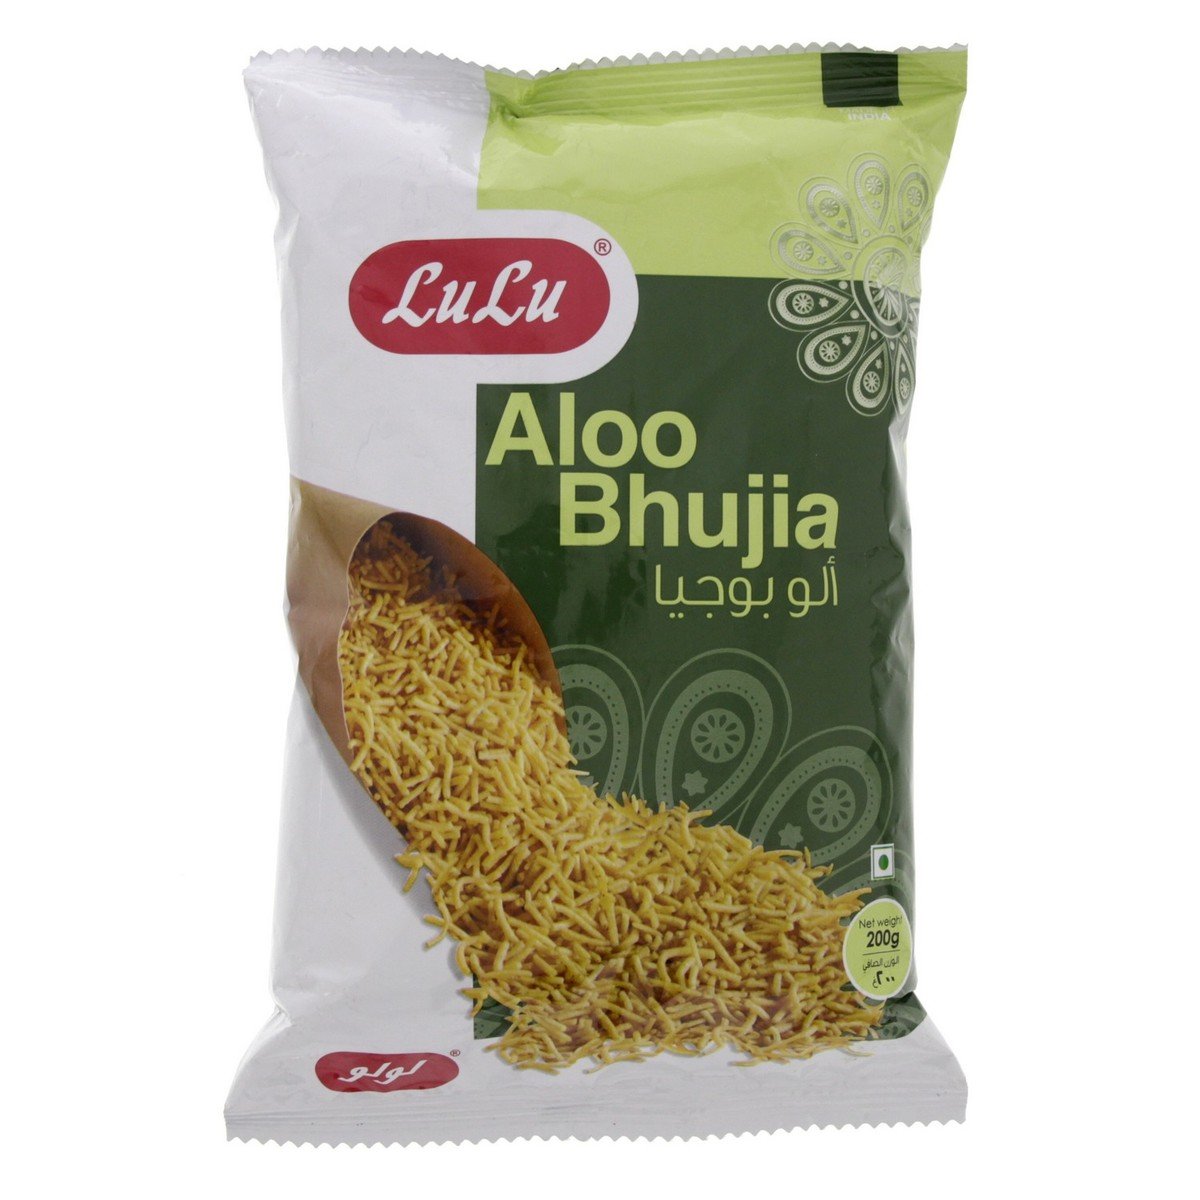 LuLu Aloo Bhujia 200g